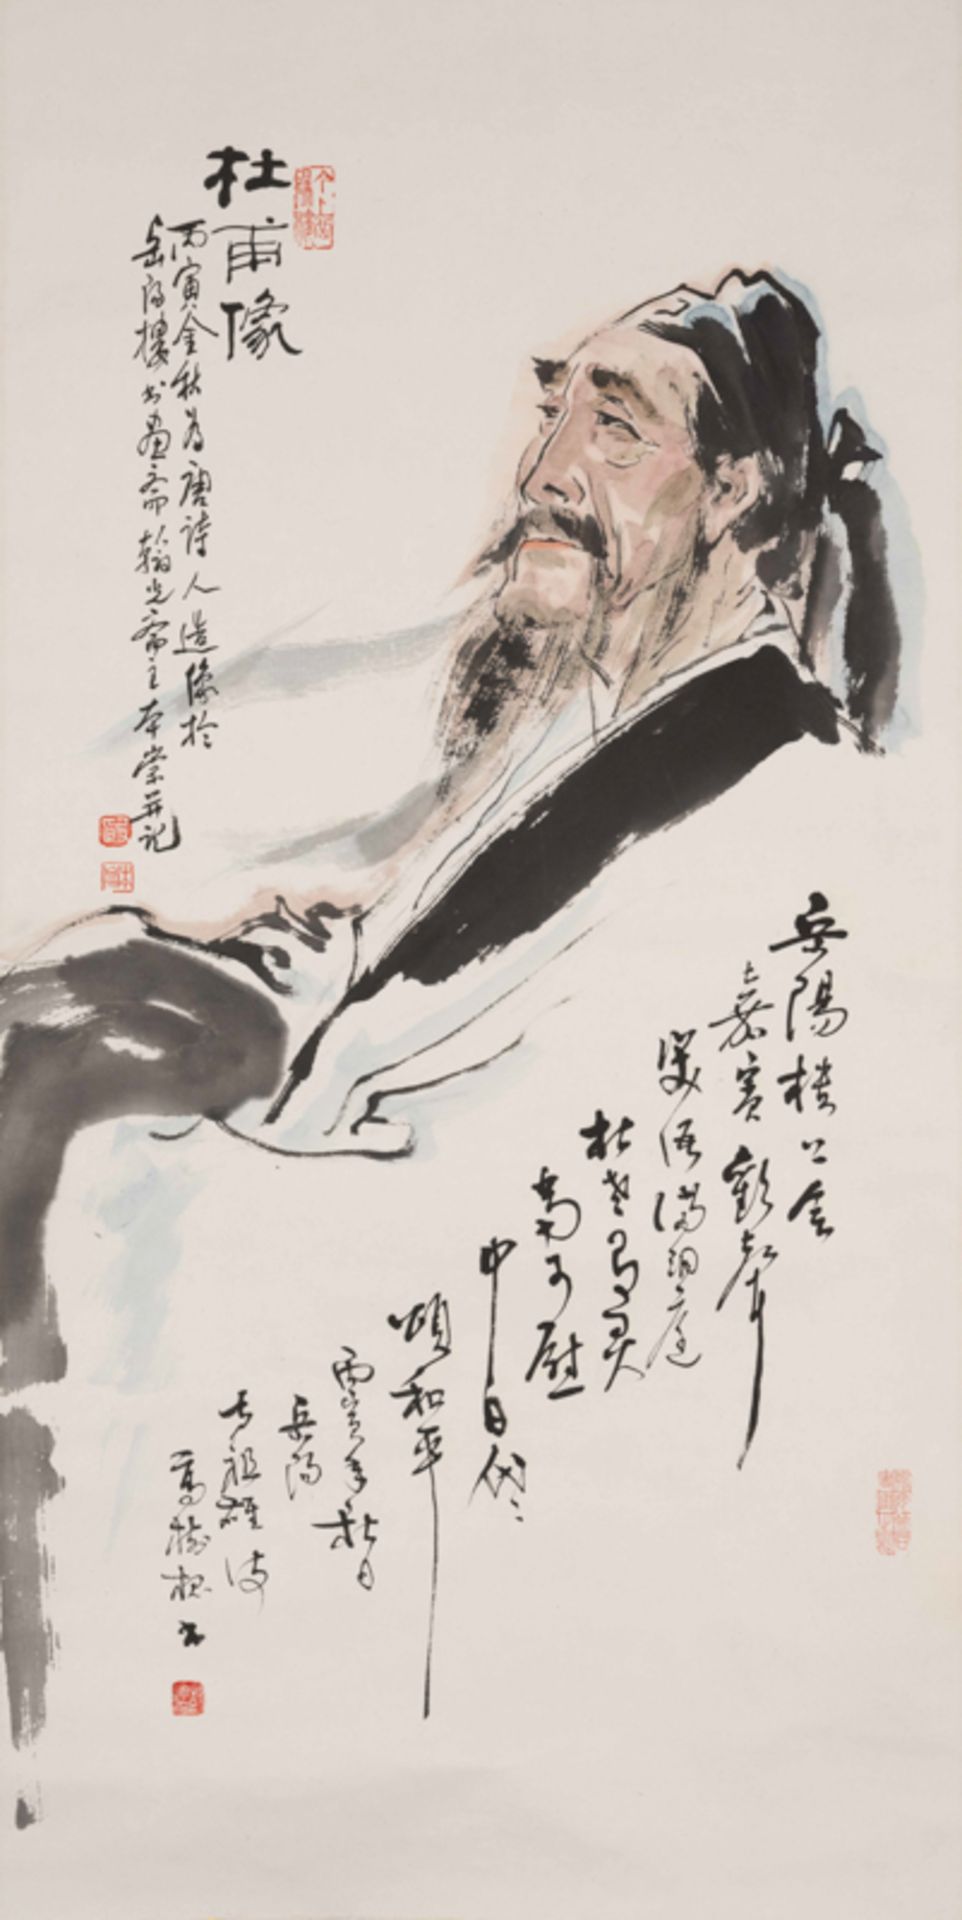 YIN BENCHONG (1937-), THE PAINTING OF POET DU FU 殷本崇 杜甫像